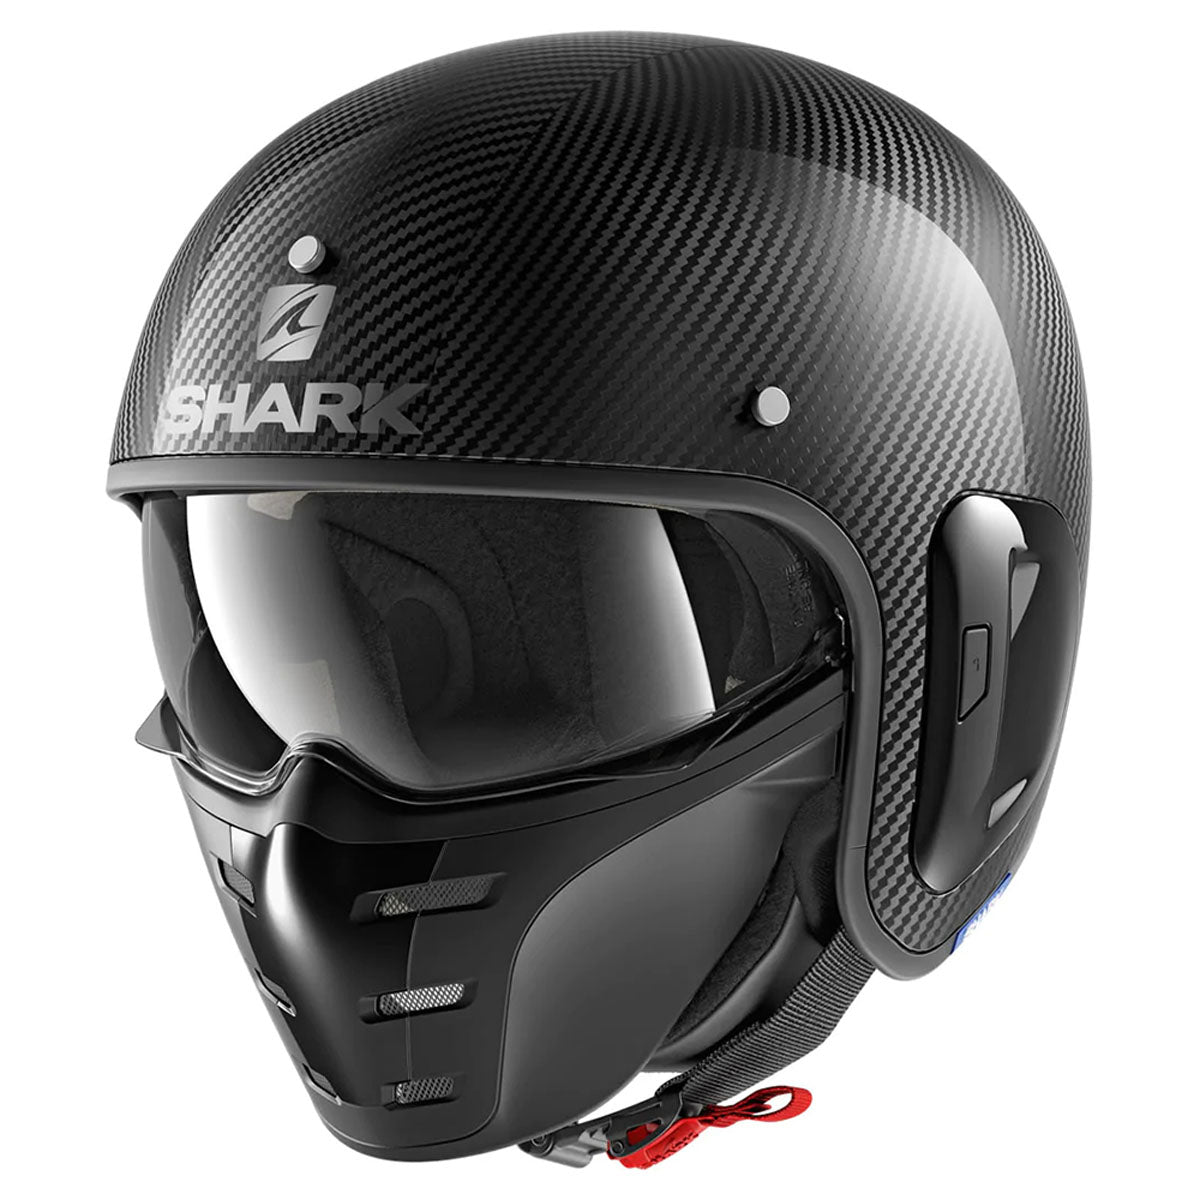 Shark S-Drak Carbon Skin Helmet